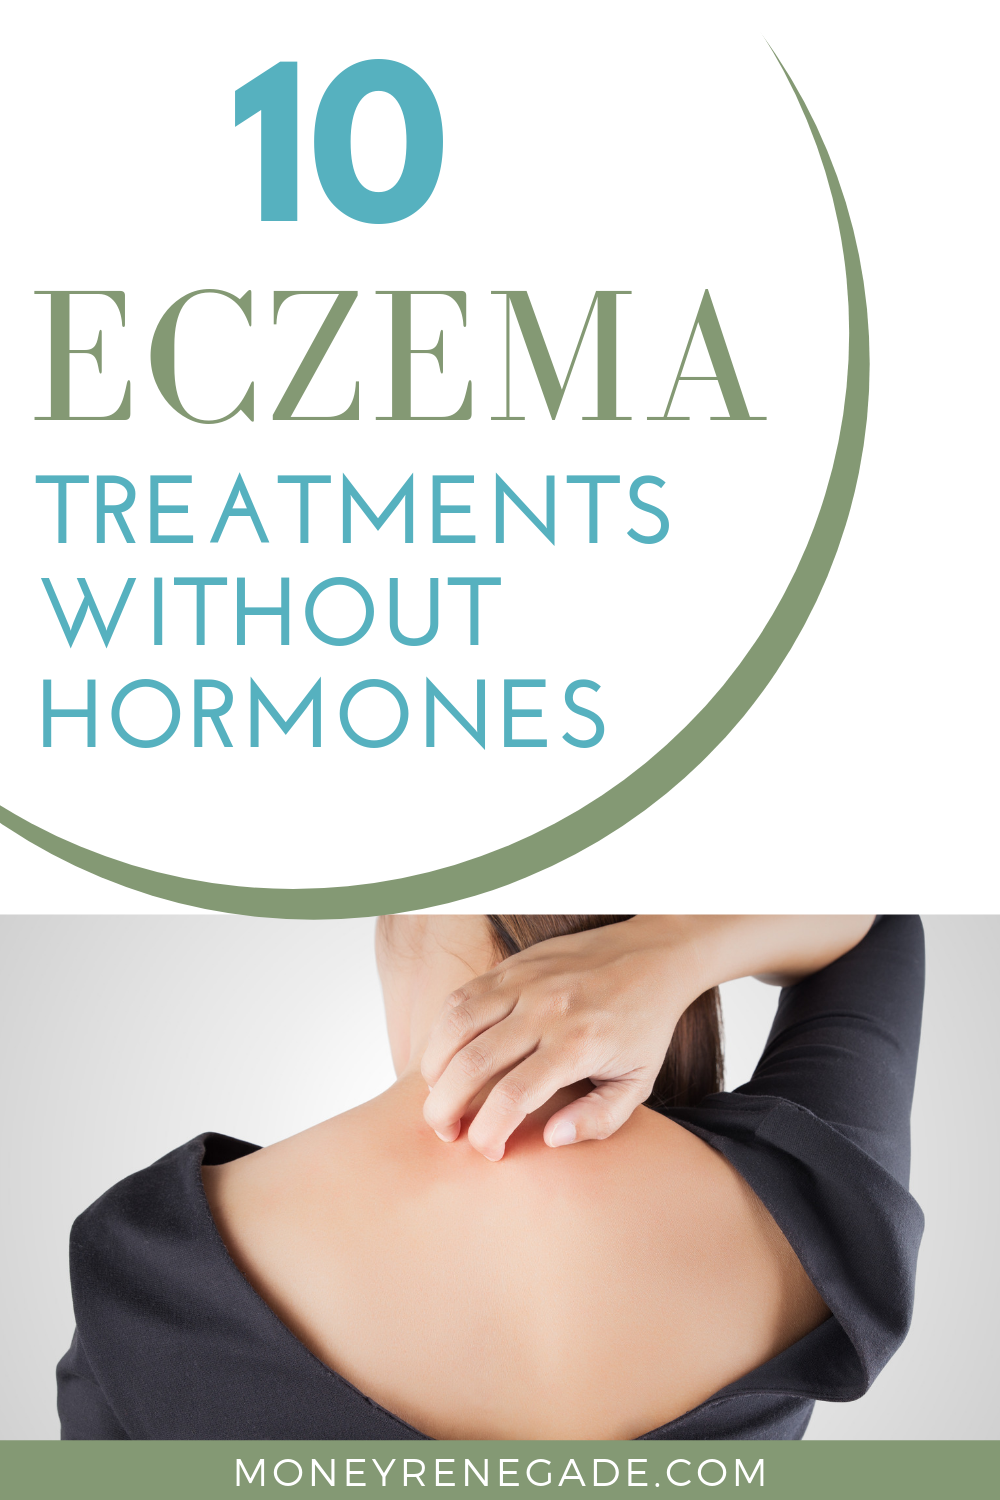 10 Natural Eczema Treatments With No Hormones